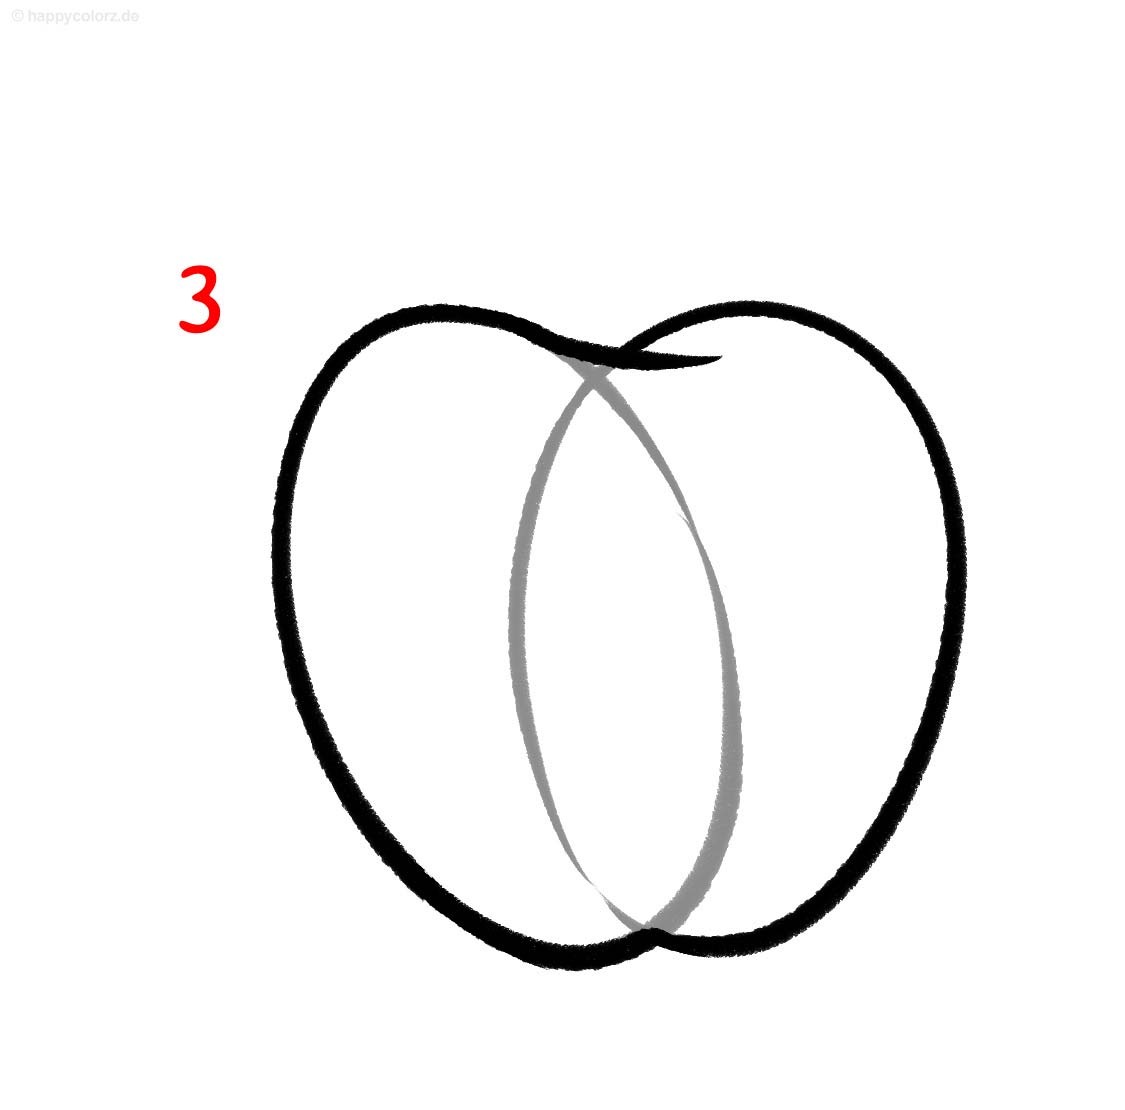 Apfel zeichnen - Anleitung